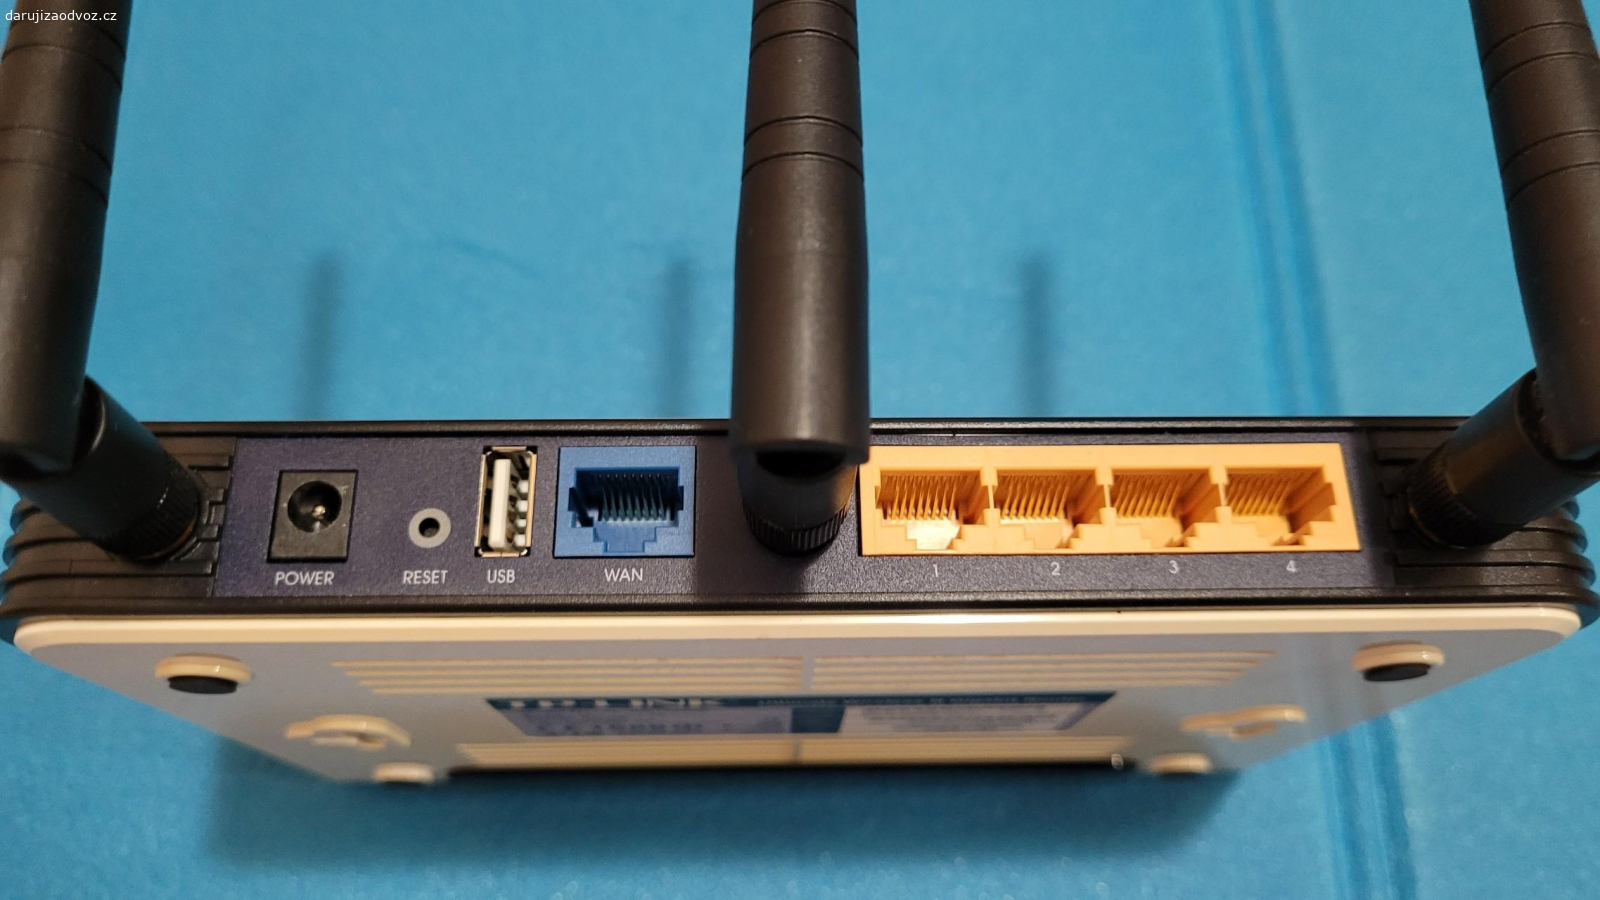 WiFi router TP-LINK TL-WR1043N. Starší funkční TP-LINK TL-WR1043ND - Bezdrátový broadband router, 802.11b/g/n (draft 2.0), max. 300Mbit/s, 1x WAN, 4x GLAN, 1x USB, 3x RSMA, 64/128/152-bit WEP, WPA/WPA2 PSK, SPI NAT firewall, VPN pass-through, WDS, MIMO, SST, CCA, QSS.